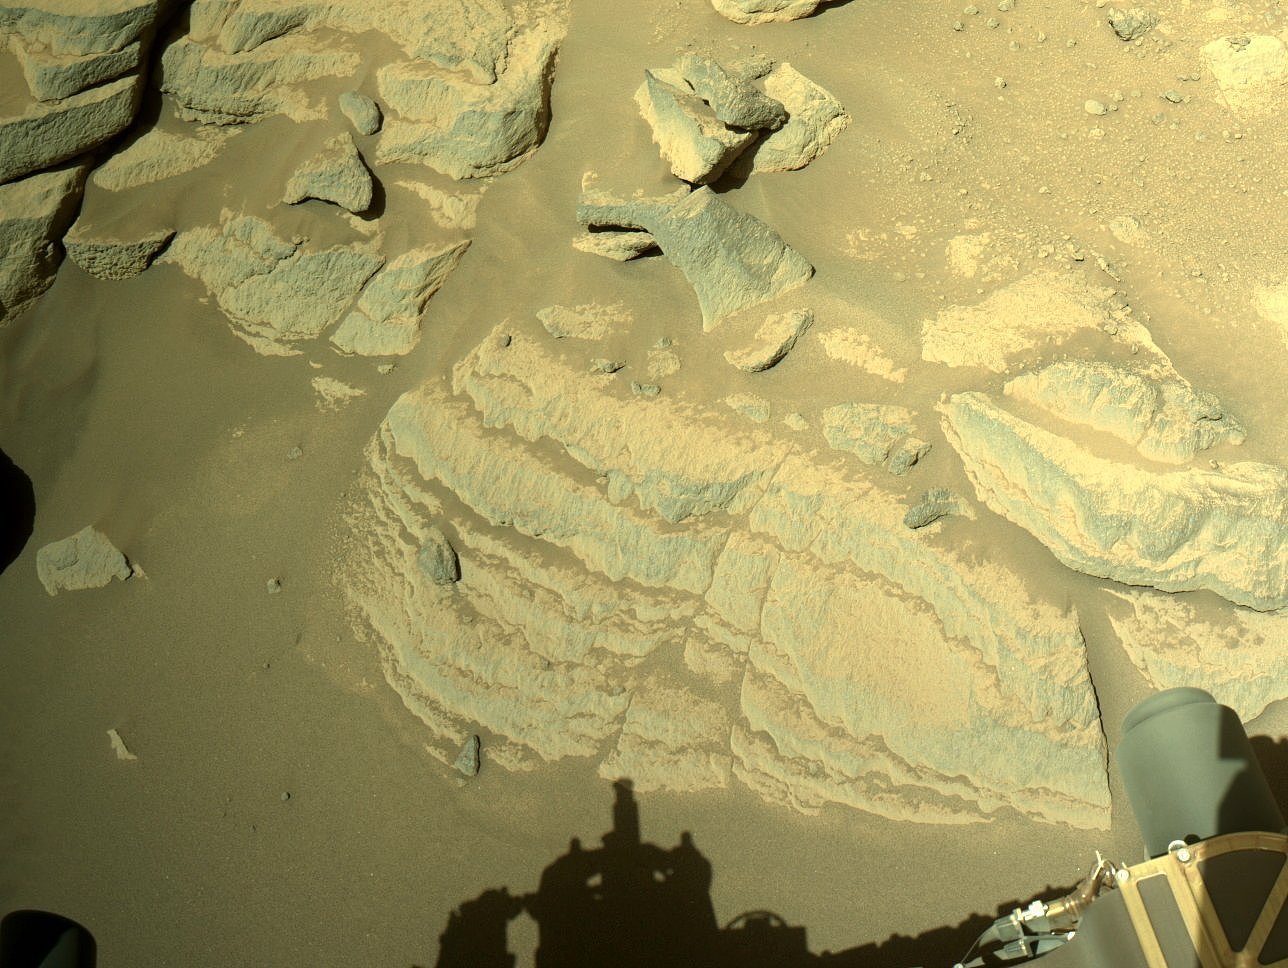 一个分层岩石被NASA视为潜在的火星岩石样本采样点 - 1